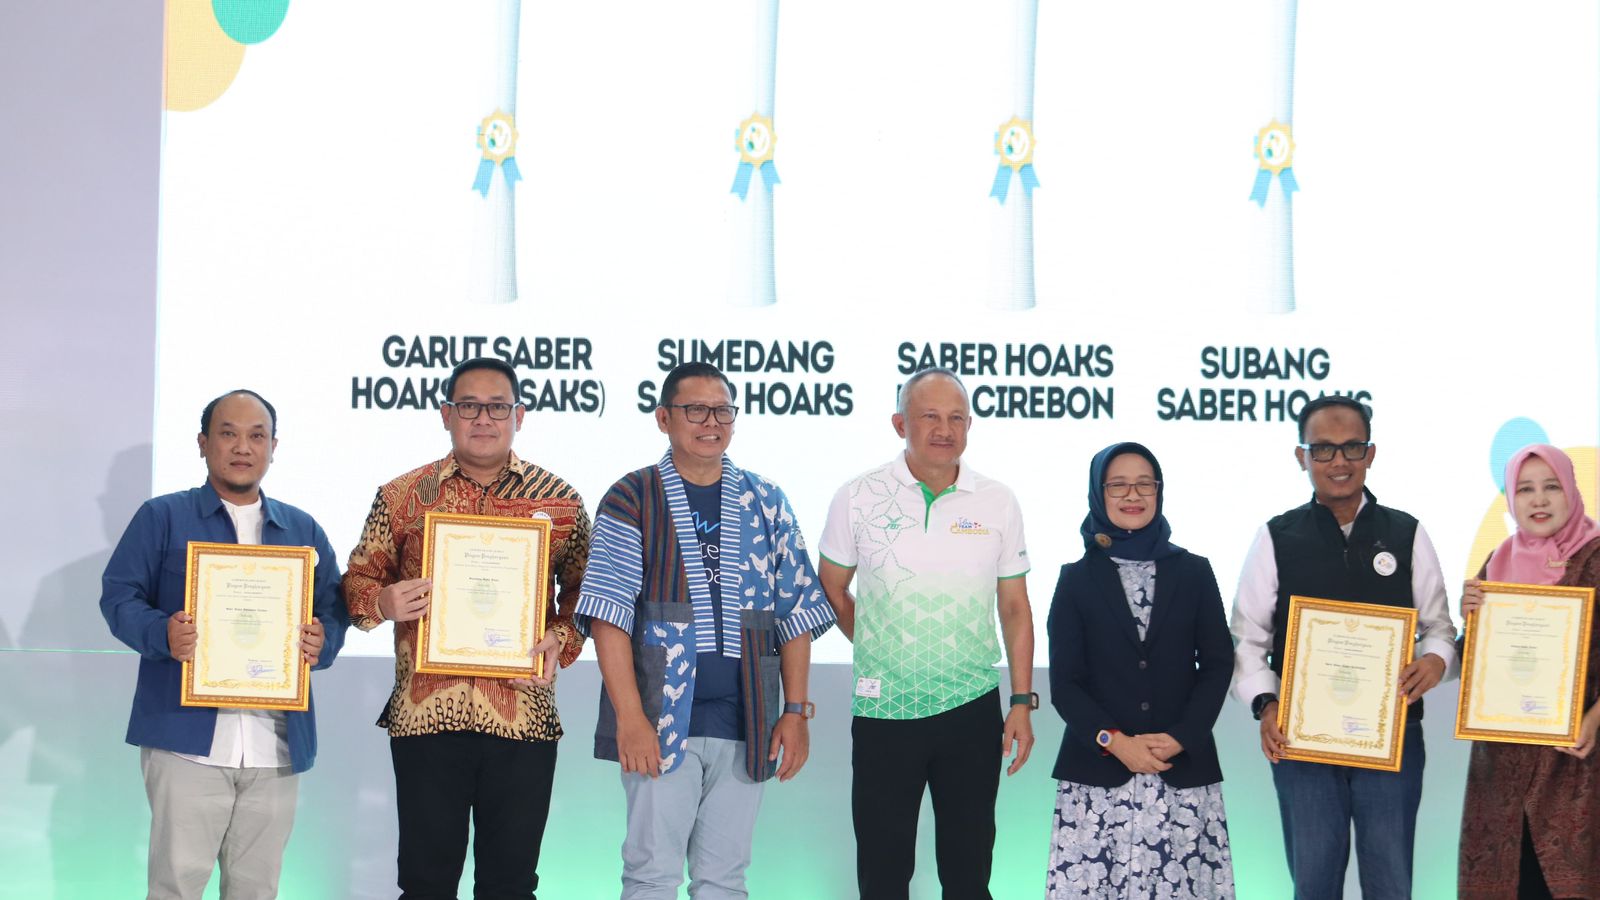 Cirebonkab Saber Hoaks saat foto bersama dengan penerima penghargaan lainnya.